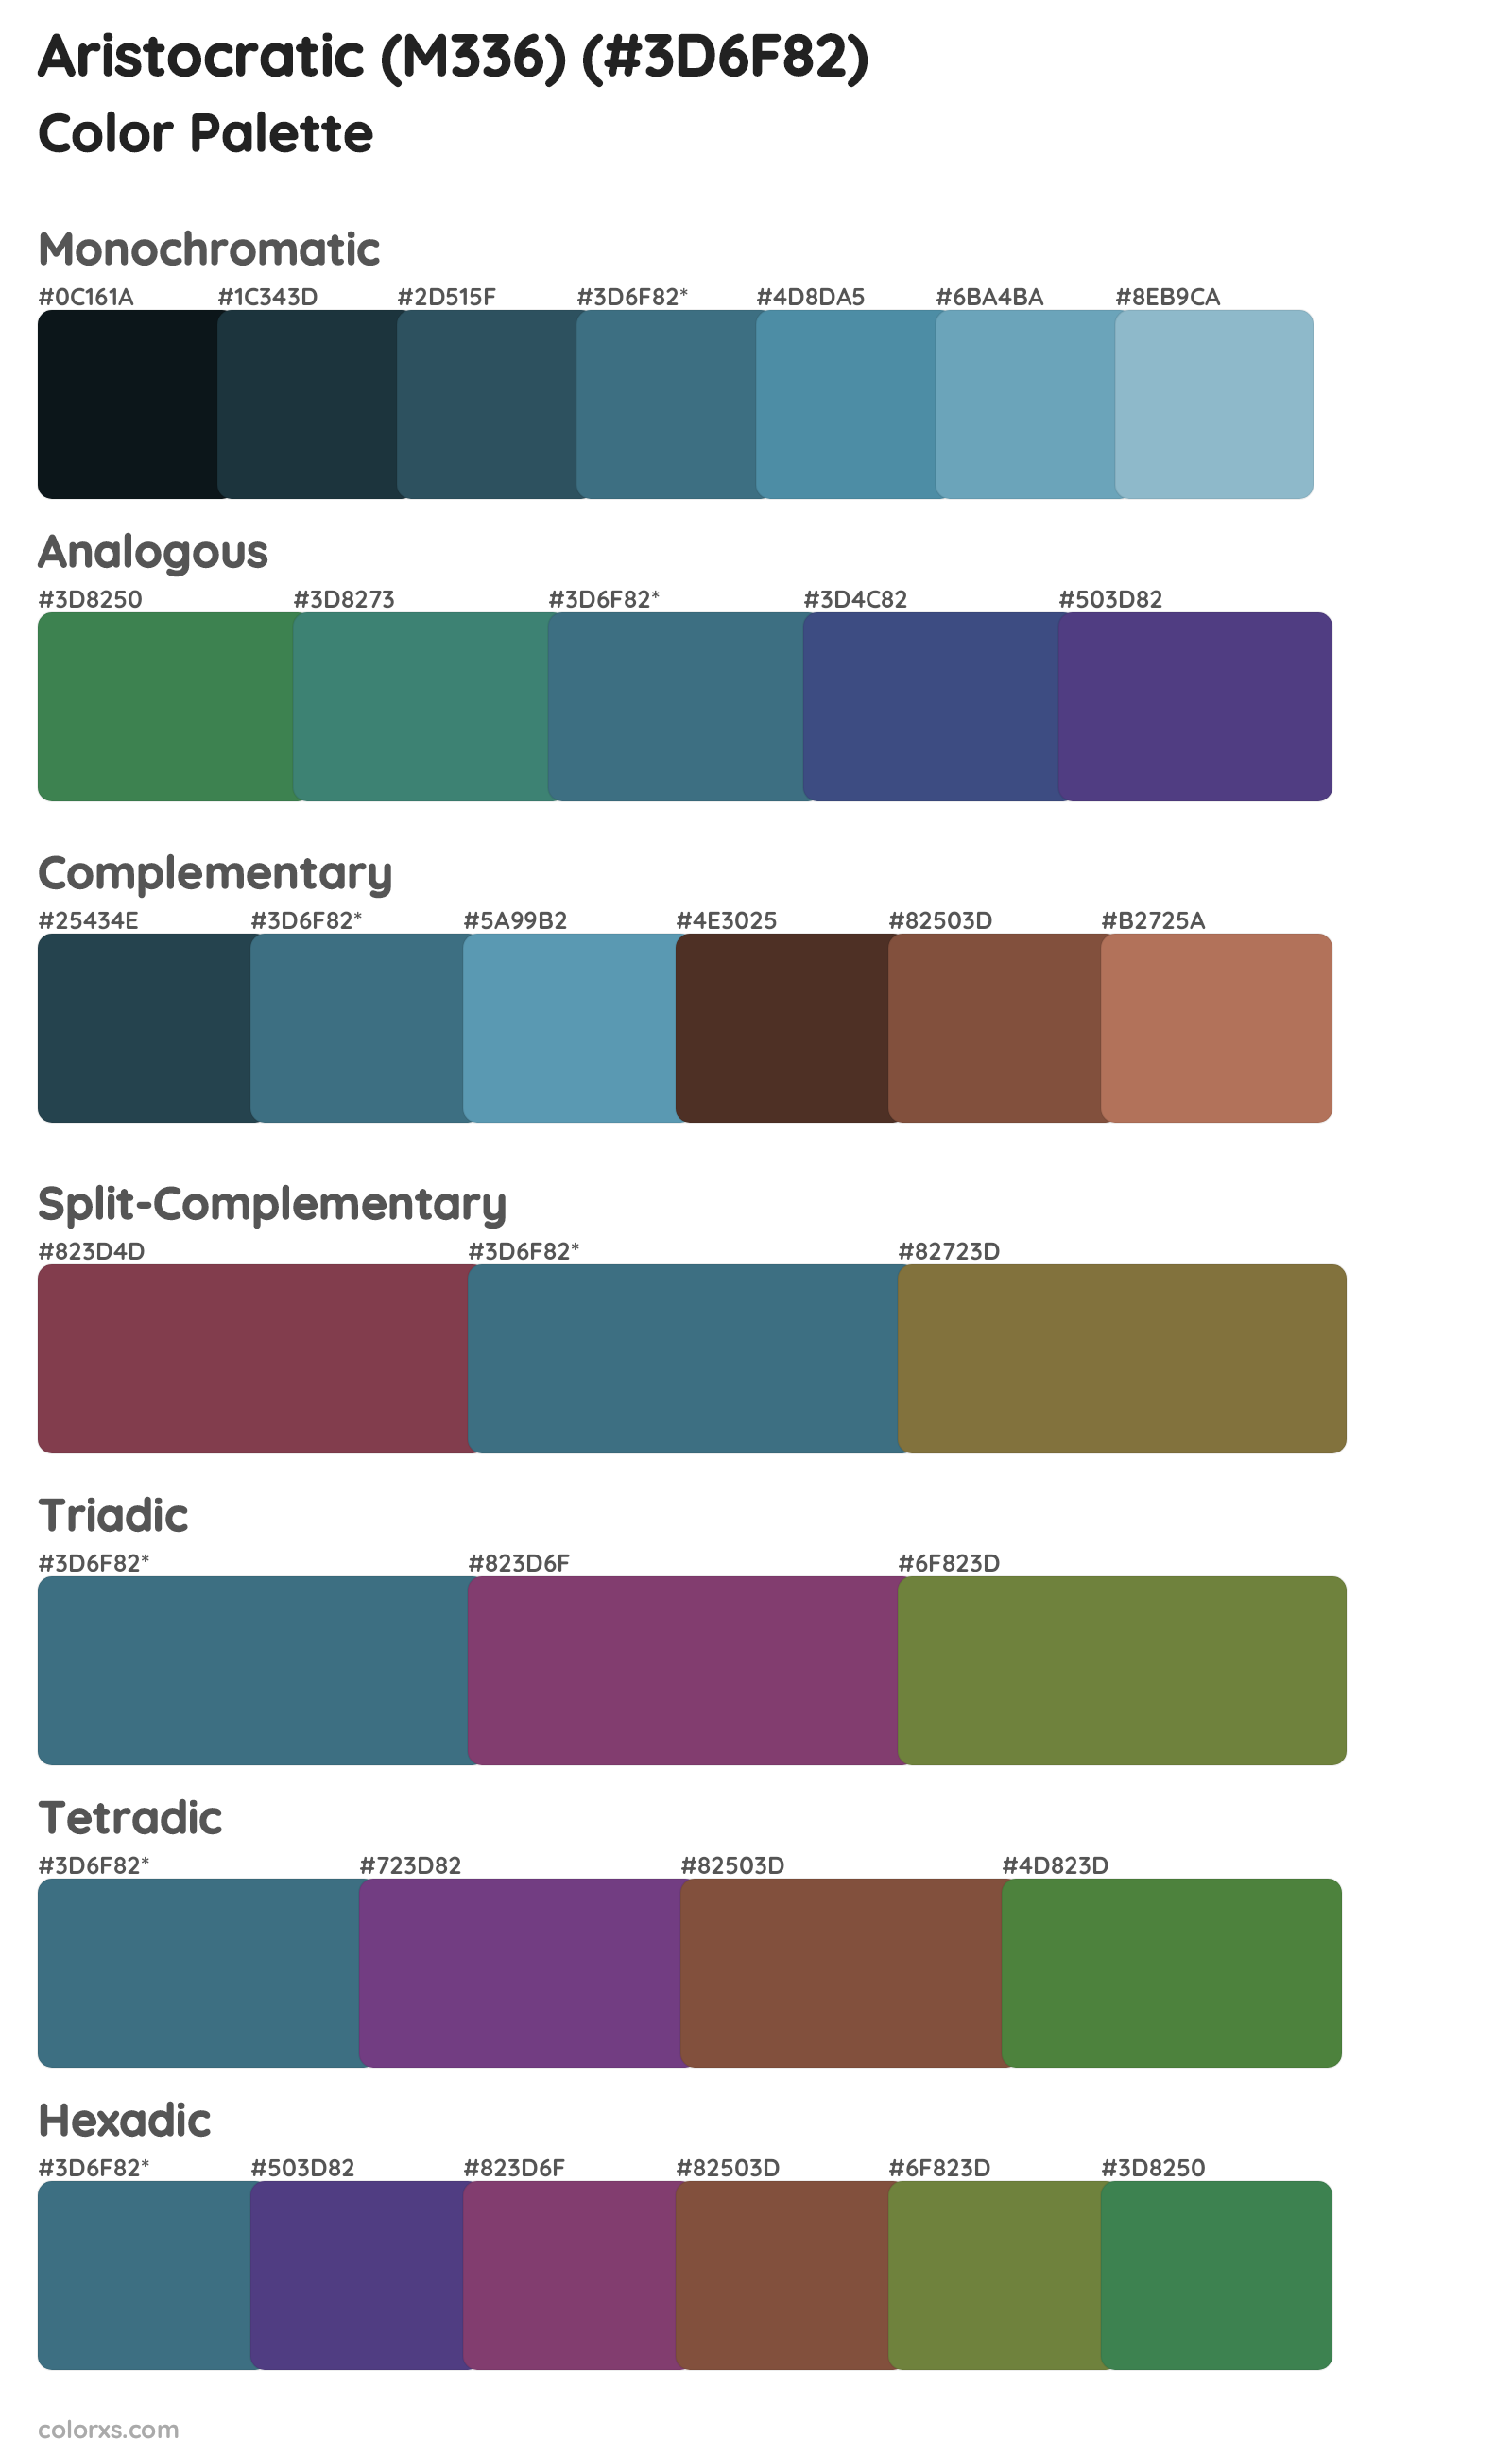 Aristocratic (M336) Color Scheme Palettes